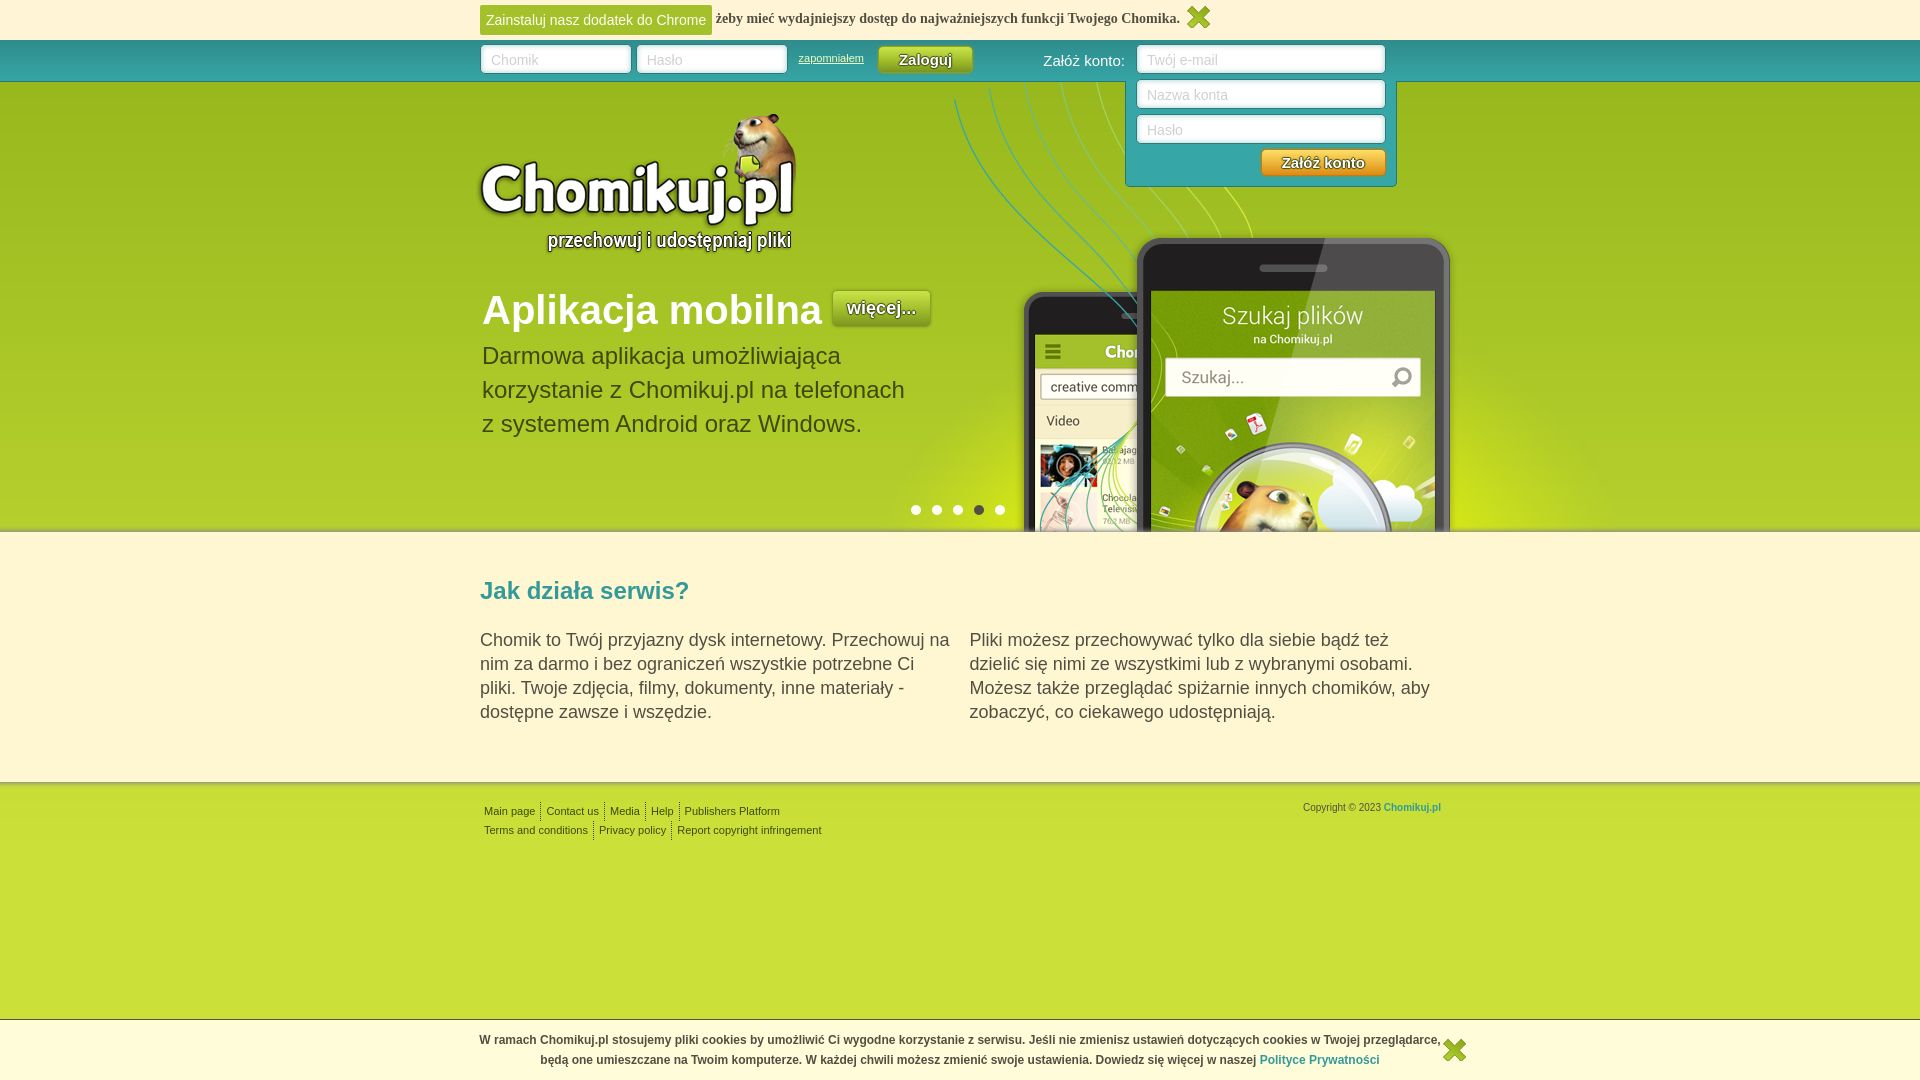 вебсайт chomikuj.pl Є   ONLINE